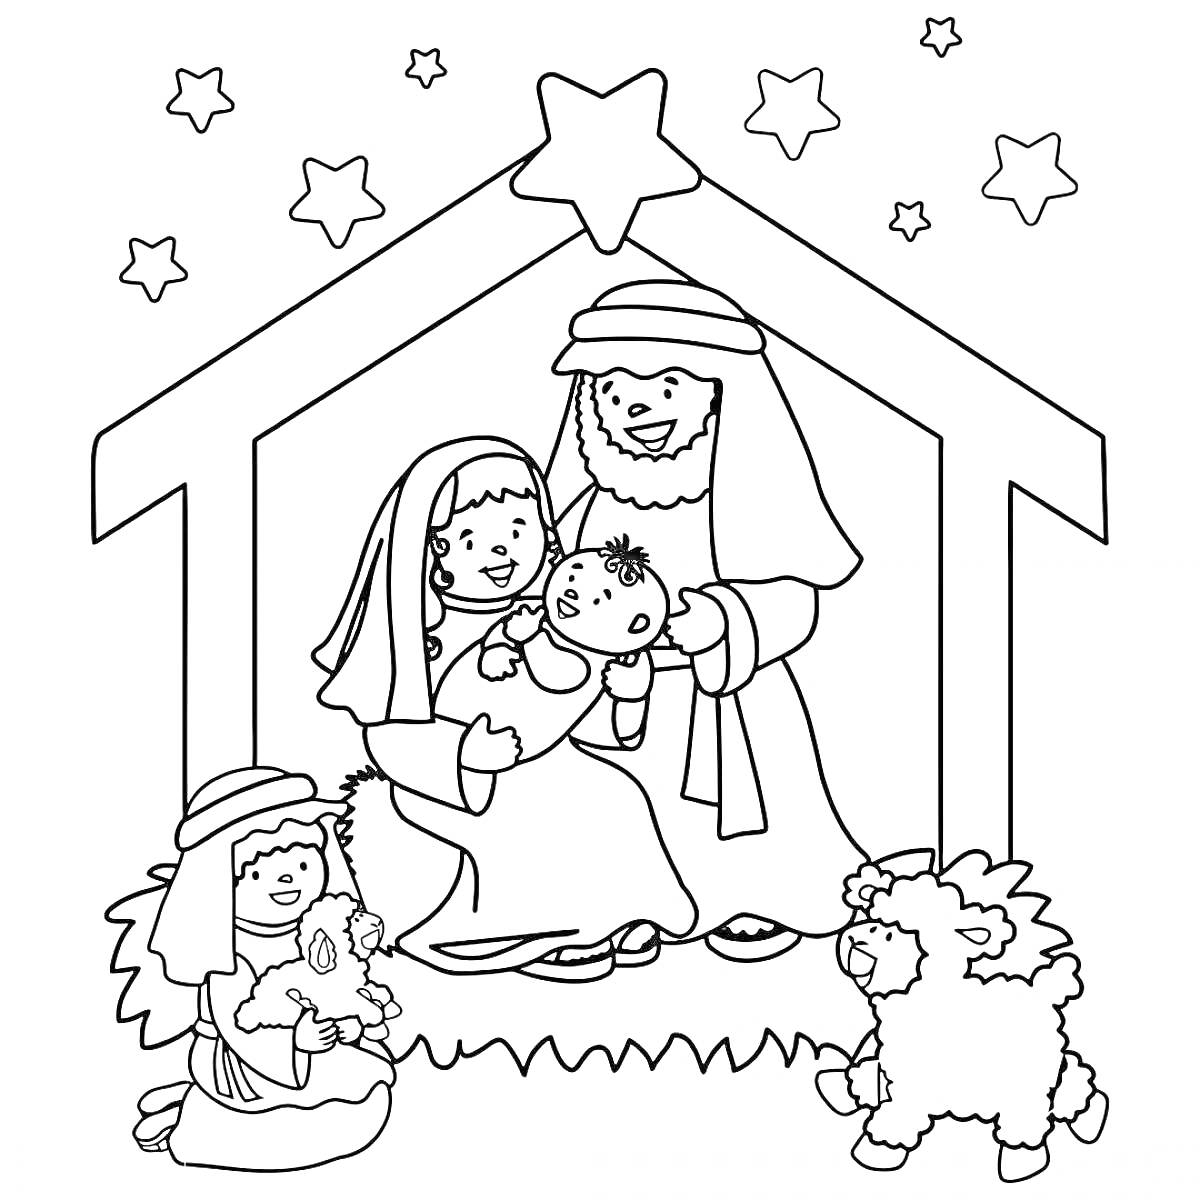 Раскраска Рождественская сцена с младенцем Иисусом, Марией, Иосифом, ребенком с ягненком, овцами и звёздами